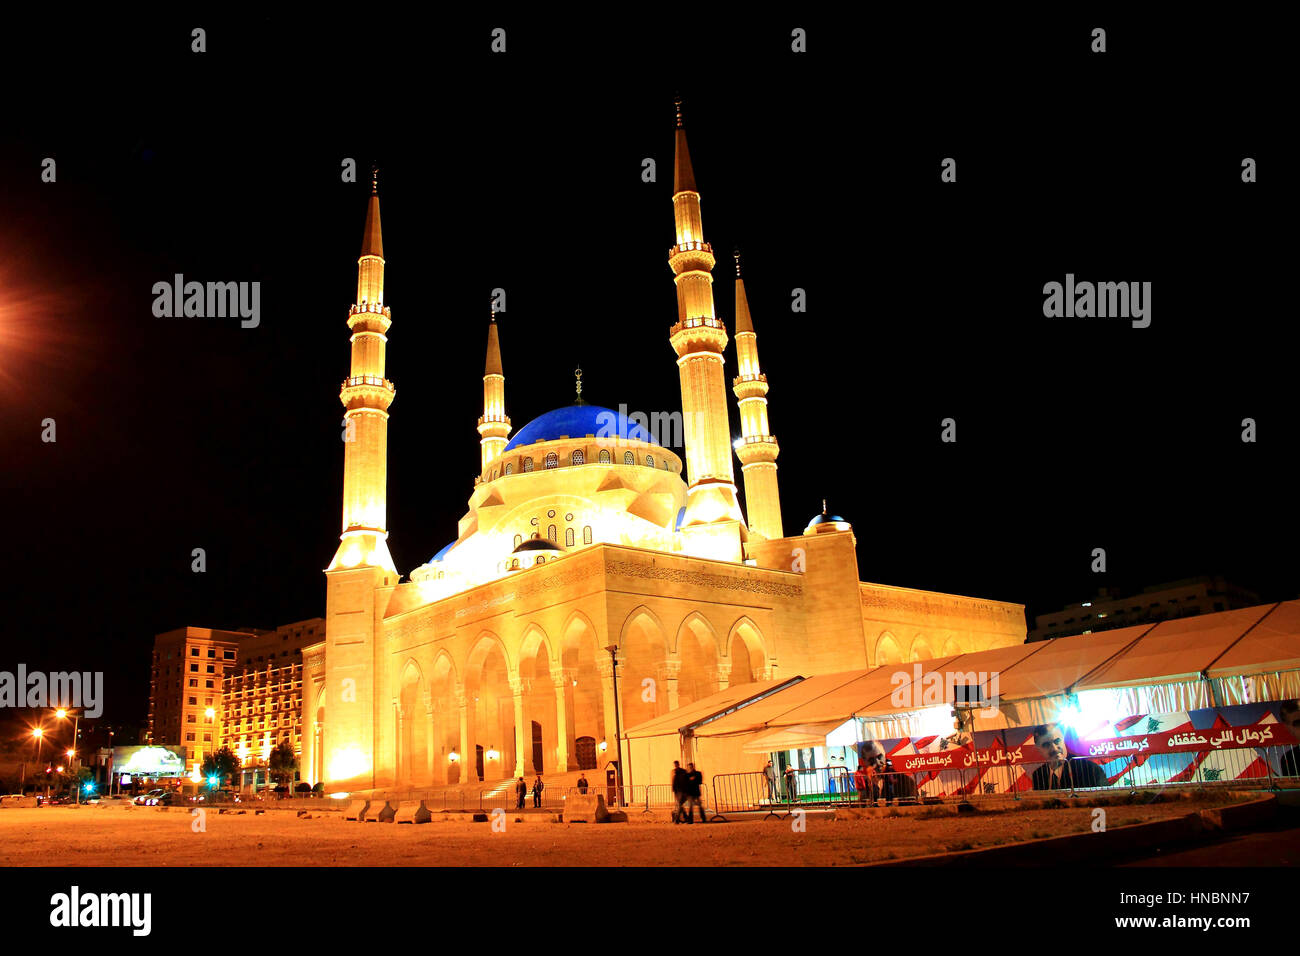 Il luminoso al Amin moschea di notte a Beirut, Libano, tende con annunci politici e immagini di Hariri e la bandiera libanese a fianco Foto Stock